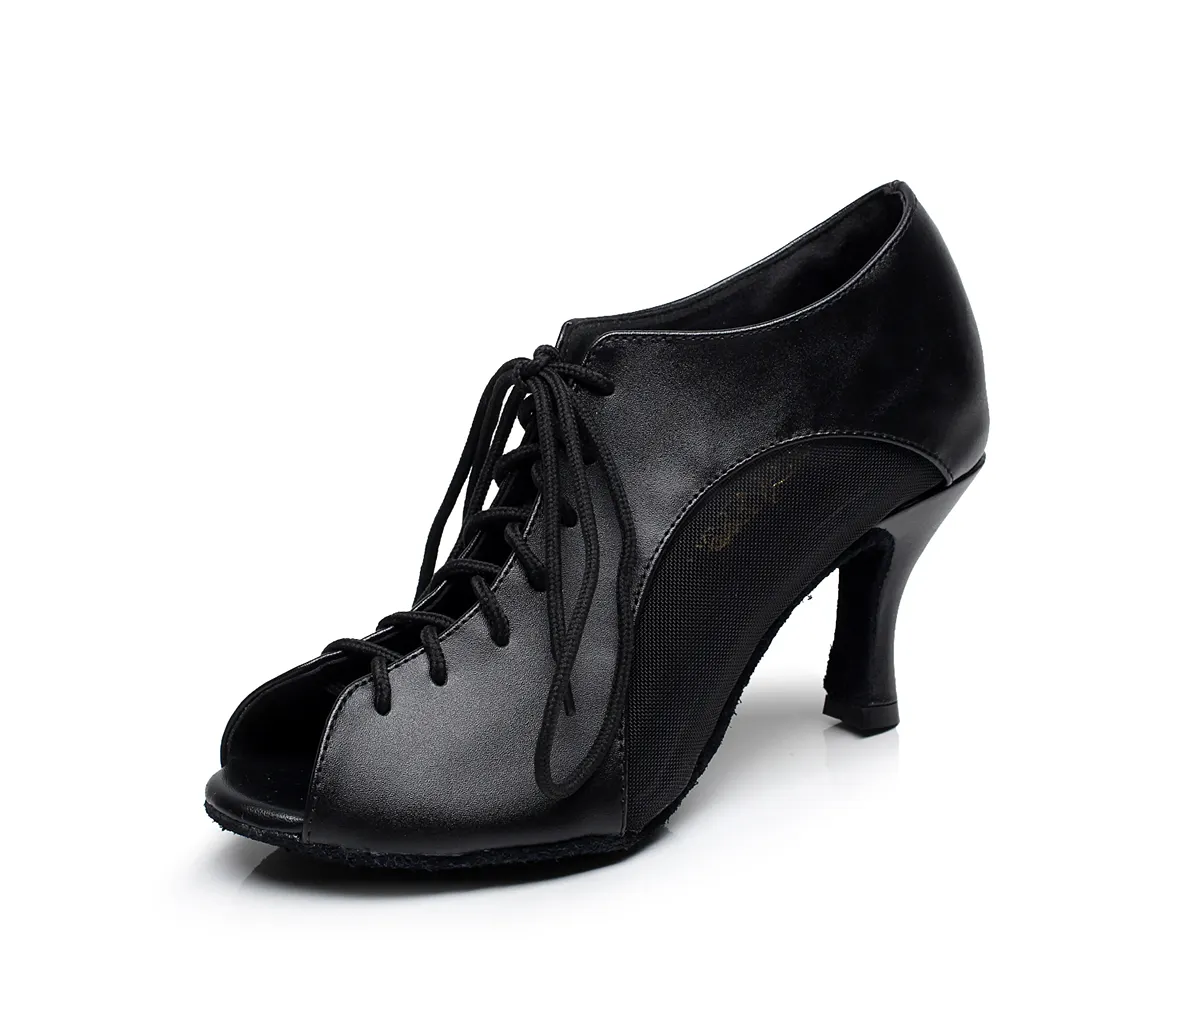 Damen-Latin-Tanz-Schuhe mit niedriger Ferse weicher Boden hohe Ferse spezielle Salsa-Schuhe neues Design